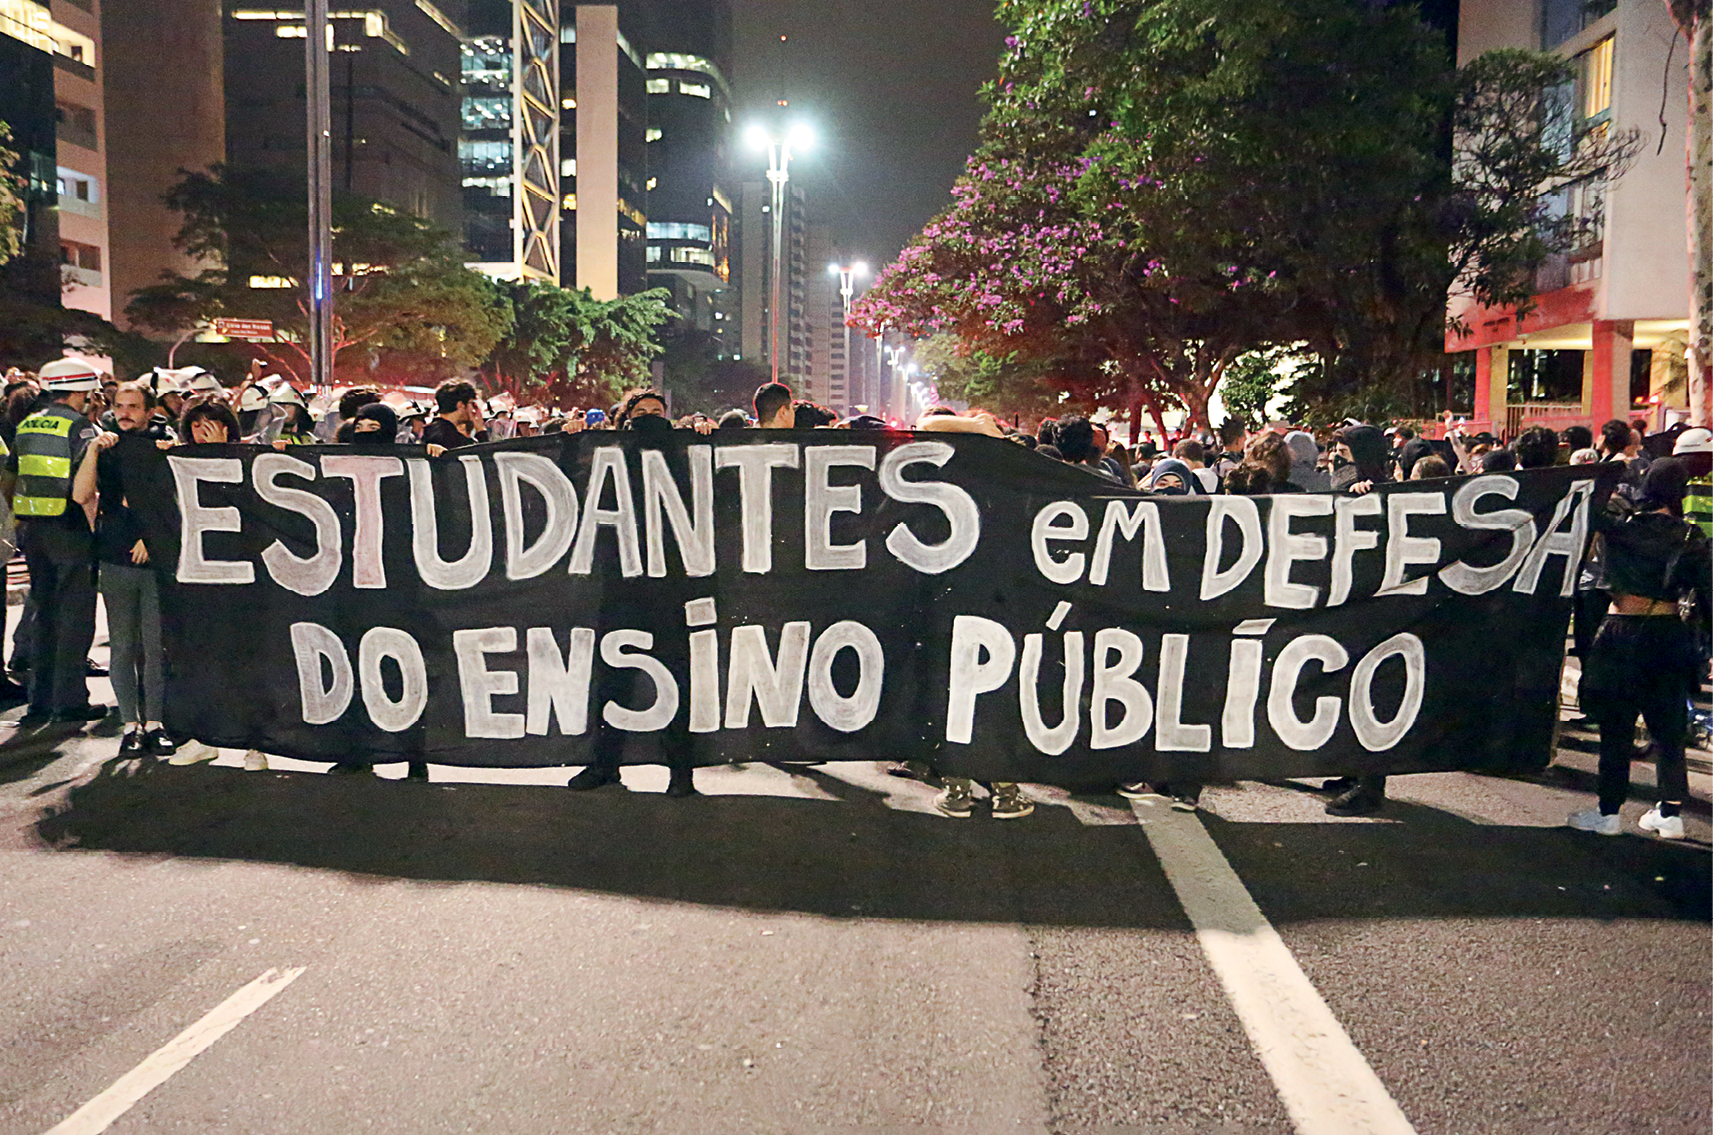 Fotografia. Grupo de pessoas aglomeradas se manifestando em uma larga avenida. À frente uma longa faixa preta com os dizeres: ESTUDANTES EM DEFESA DO ENSINO PÚBLICO.